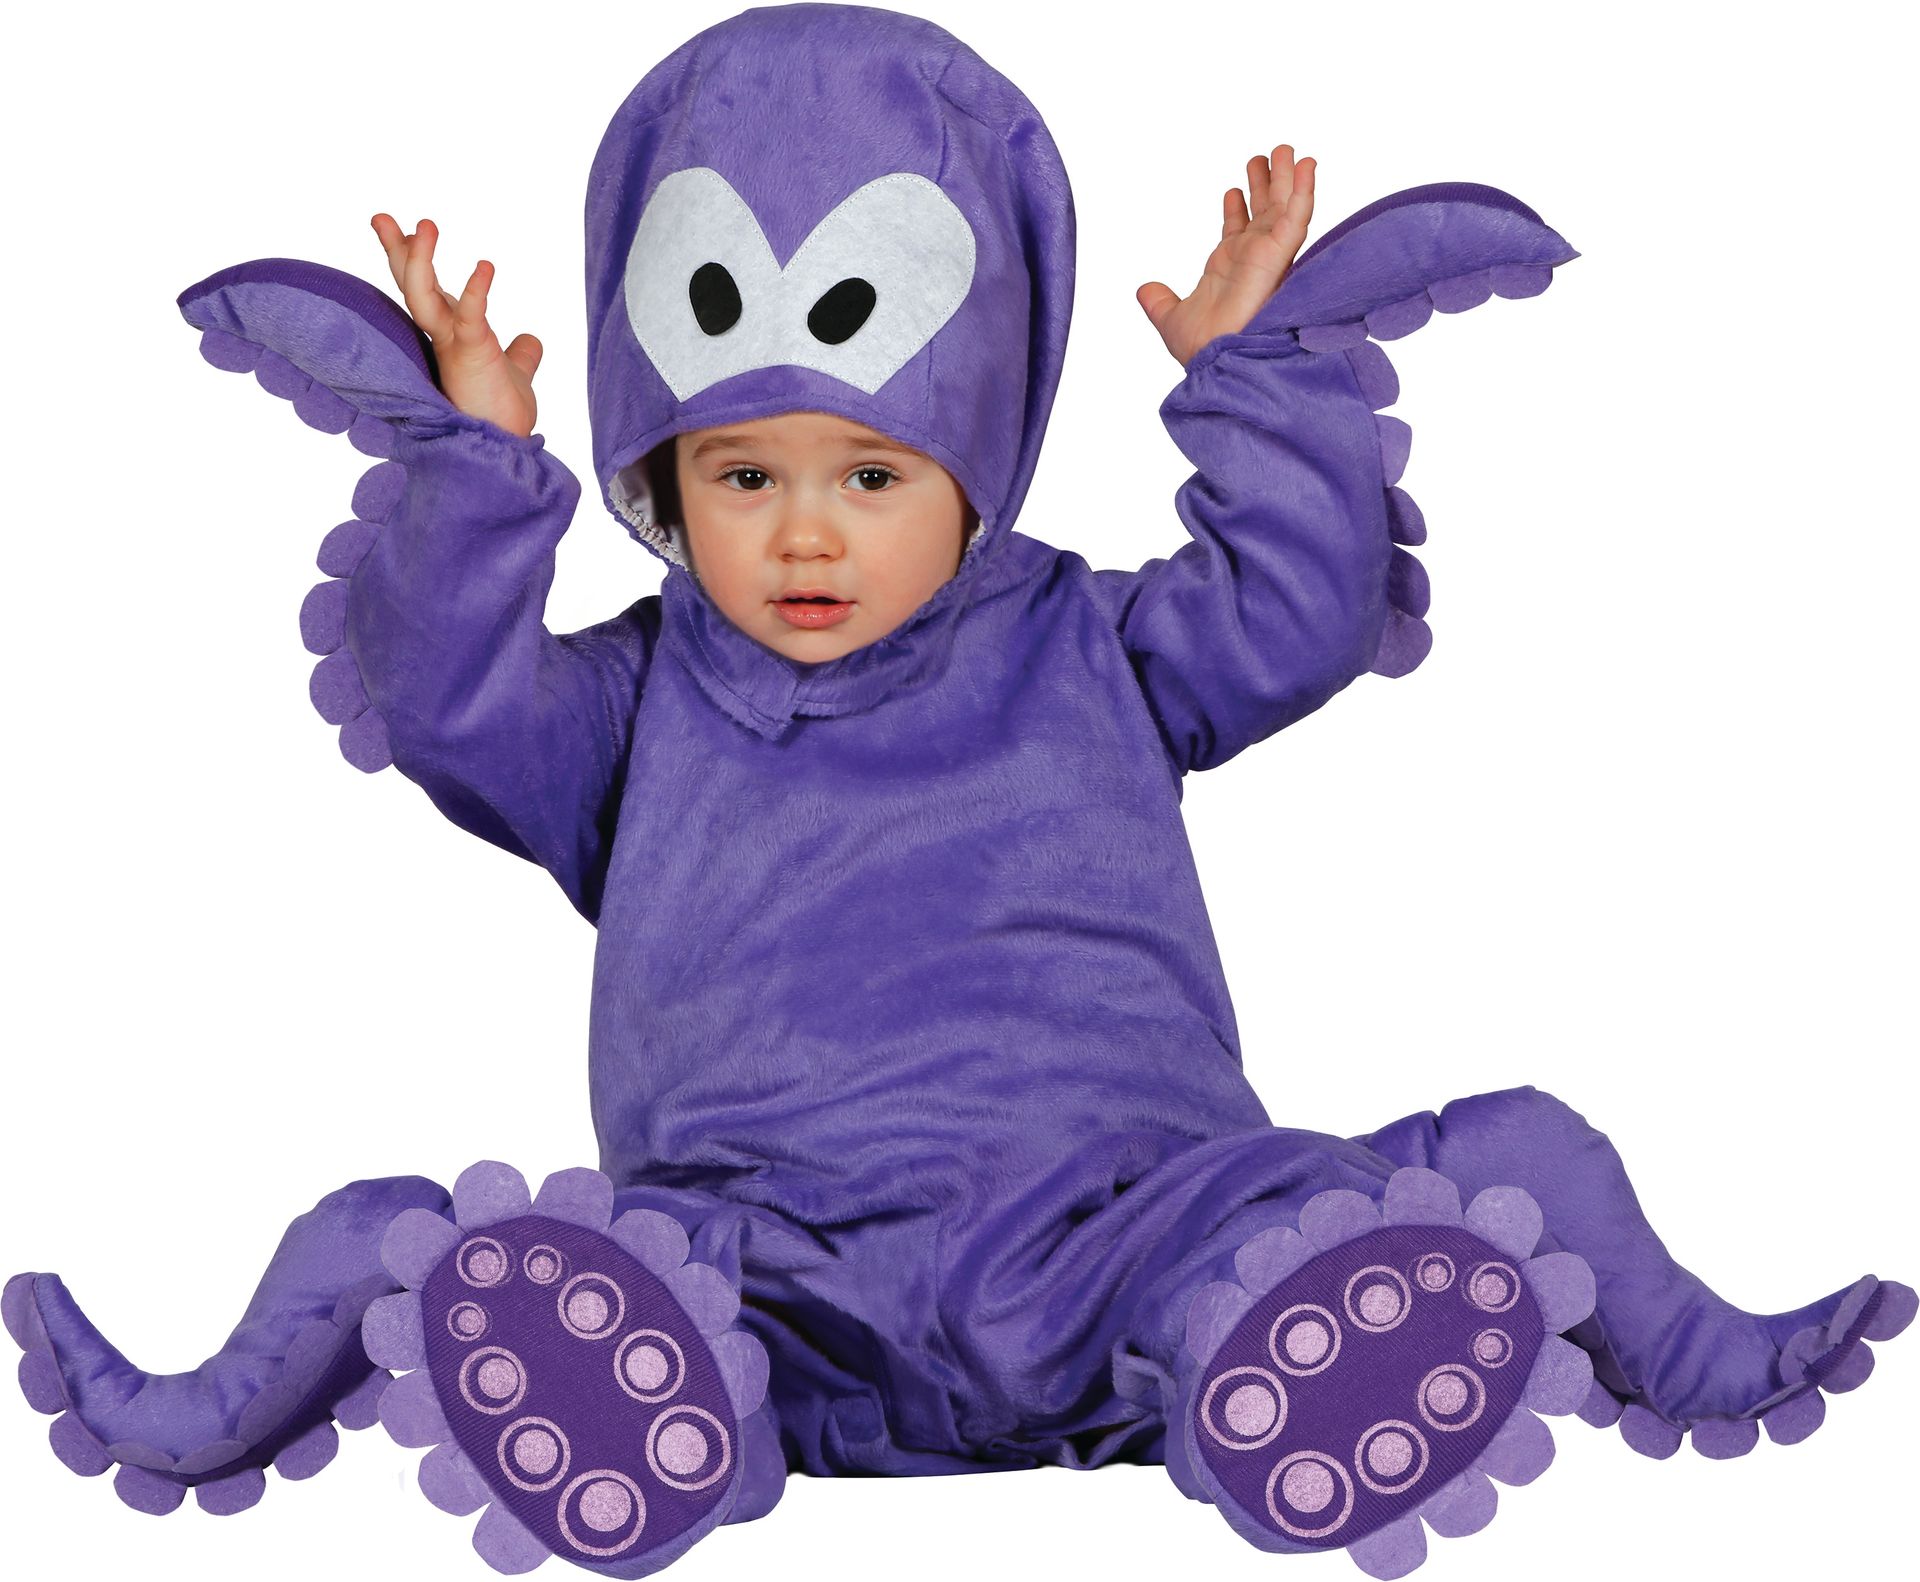 Octopus onesie baby